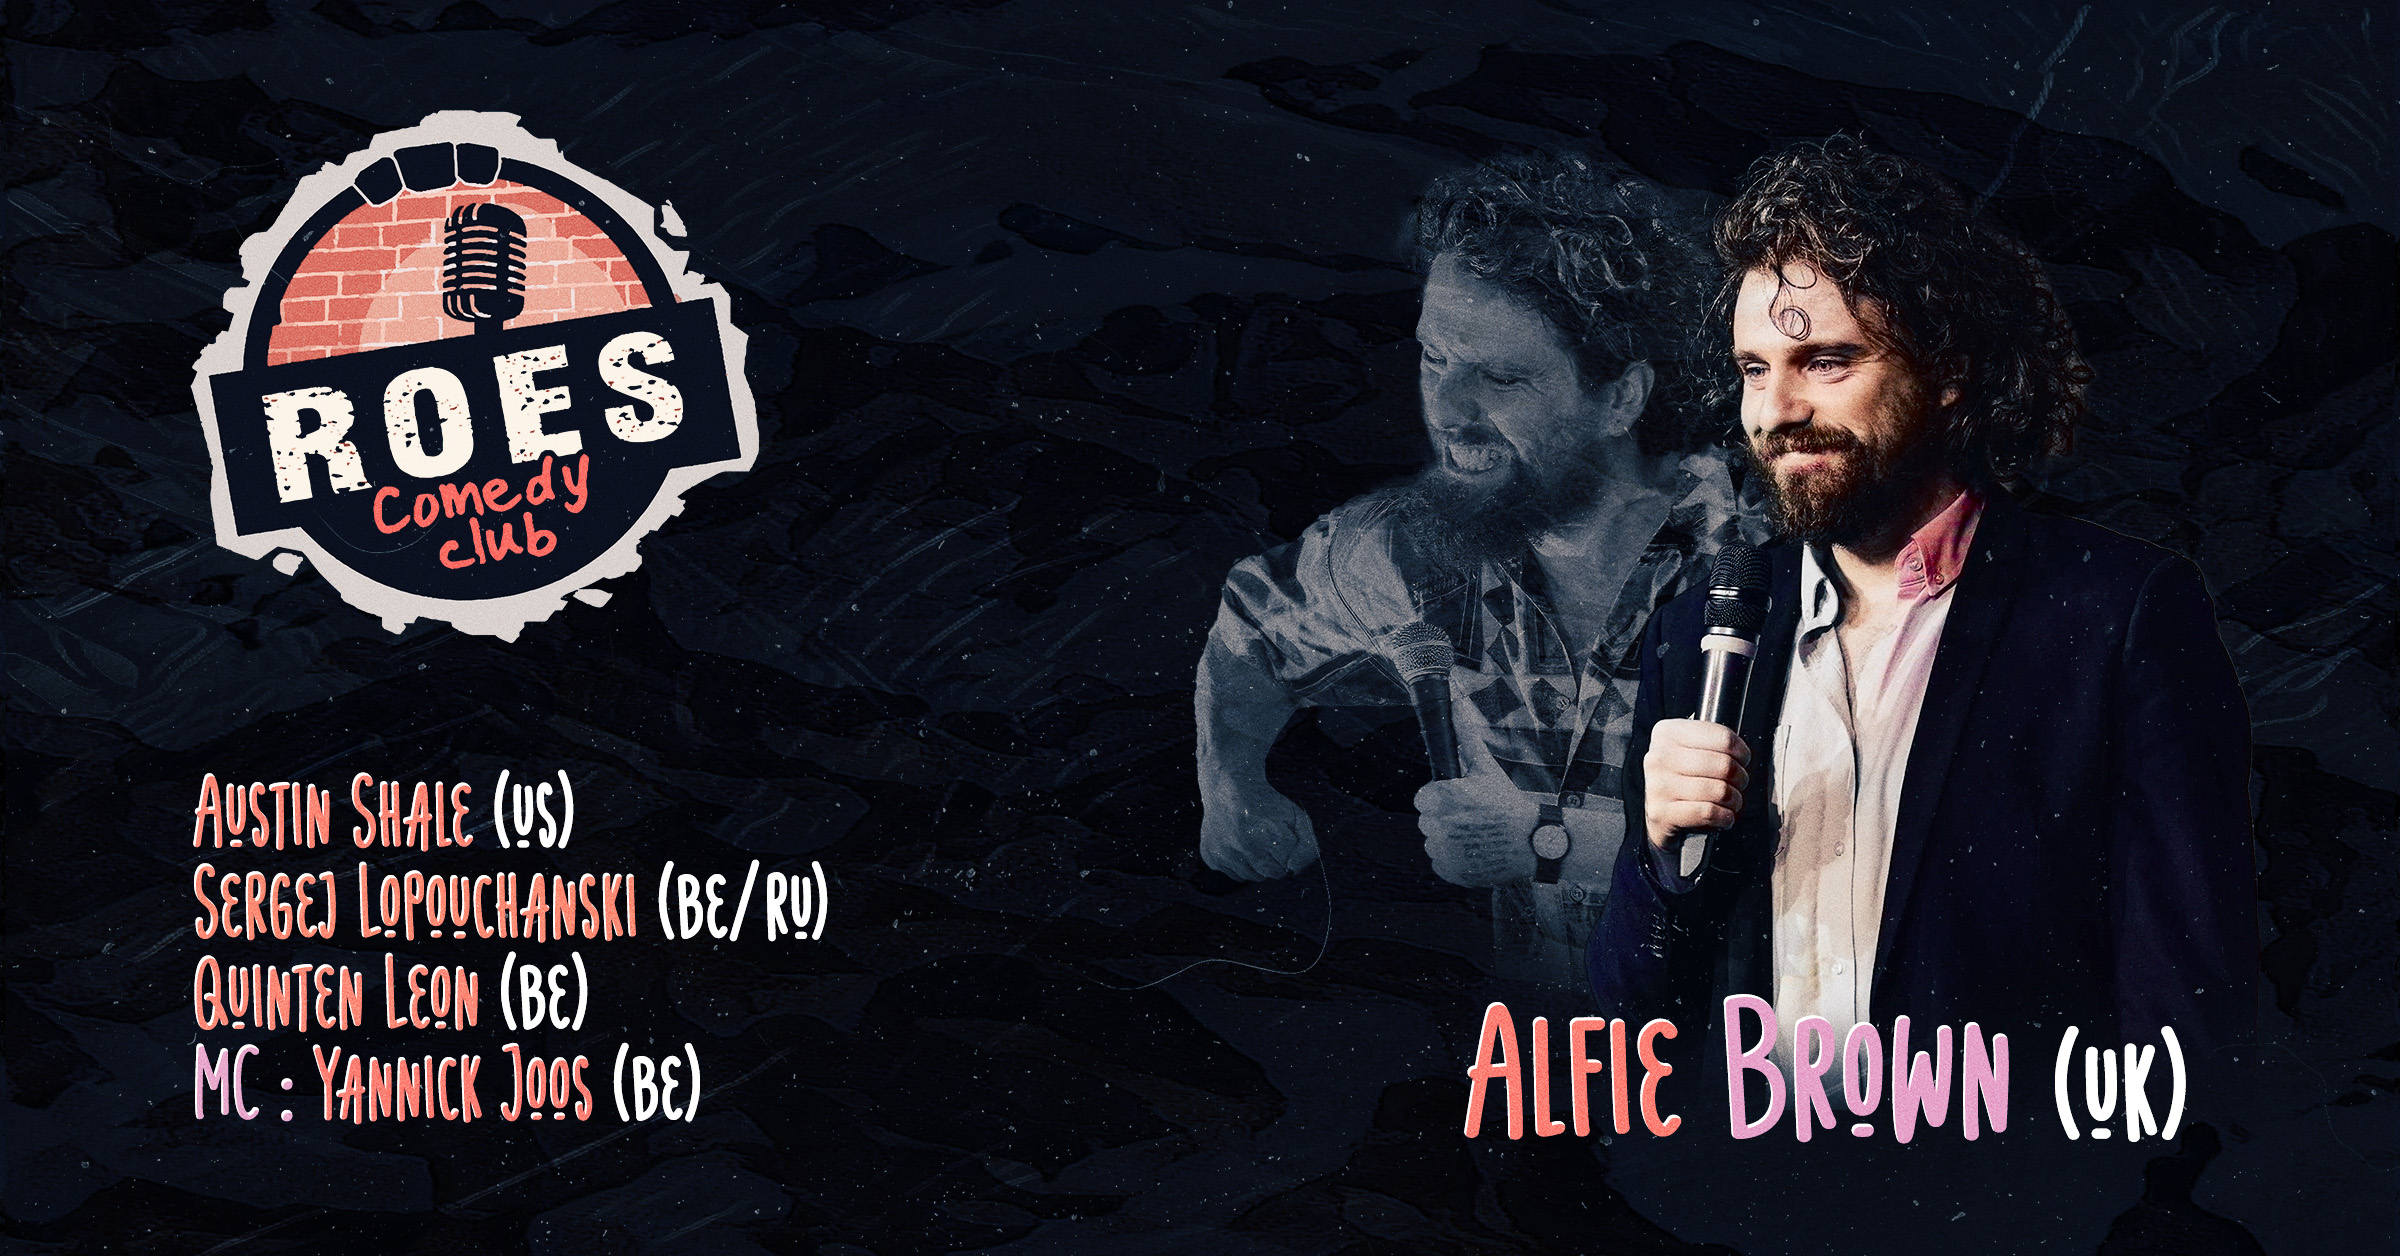 Ticket kopen voor evenement Roes Comedy Club: Alfie Brown (English comedy show)